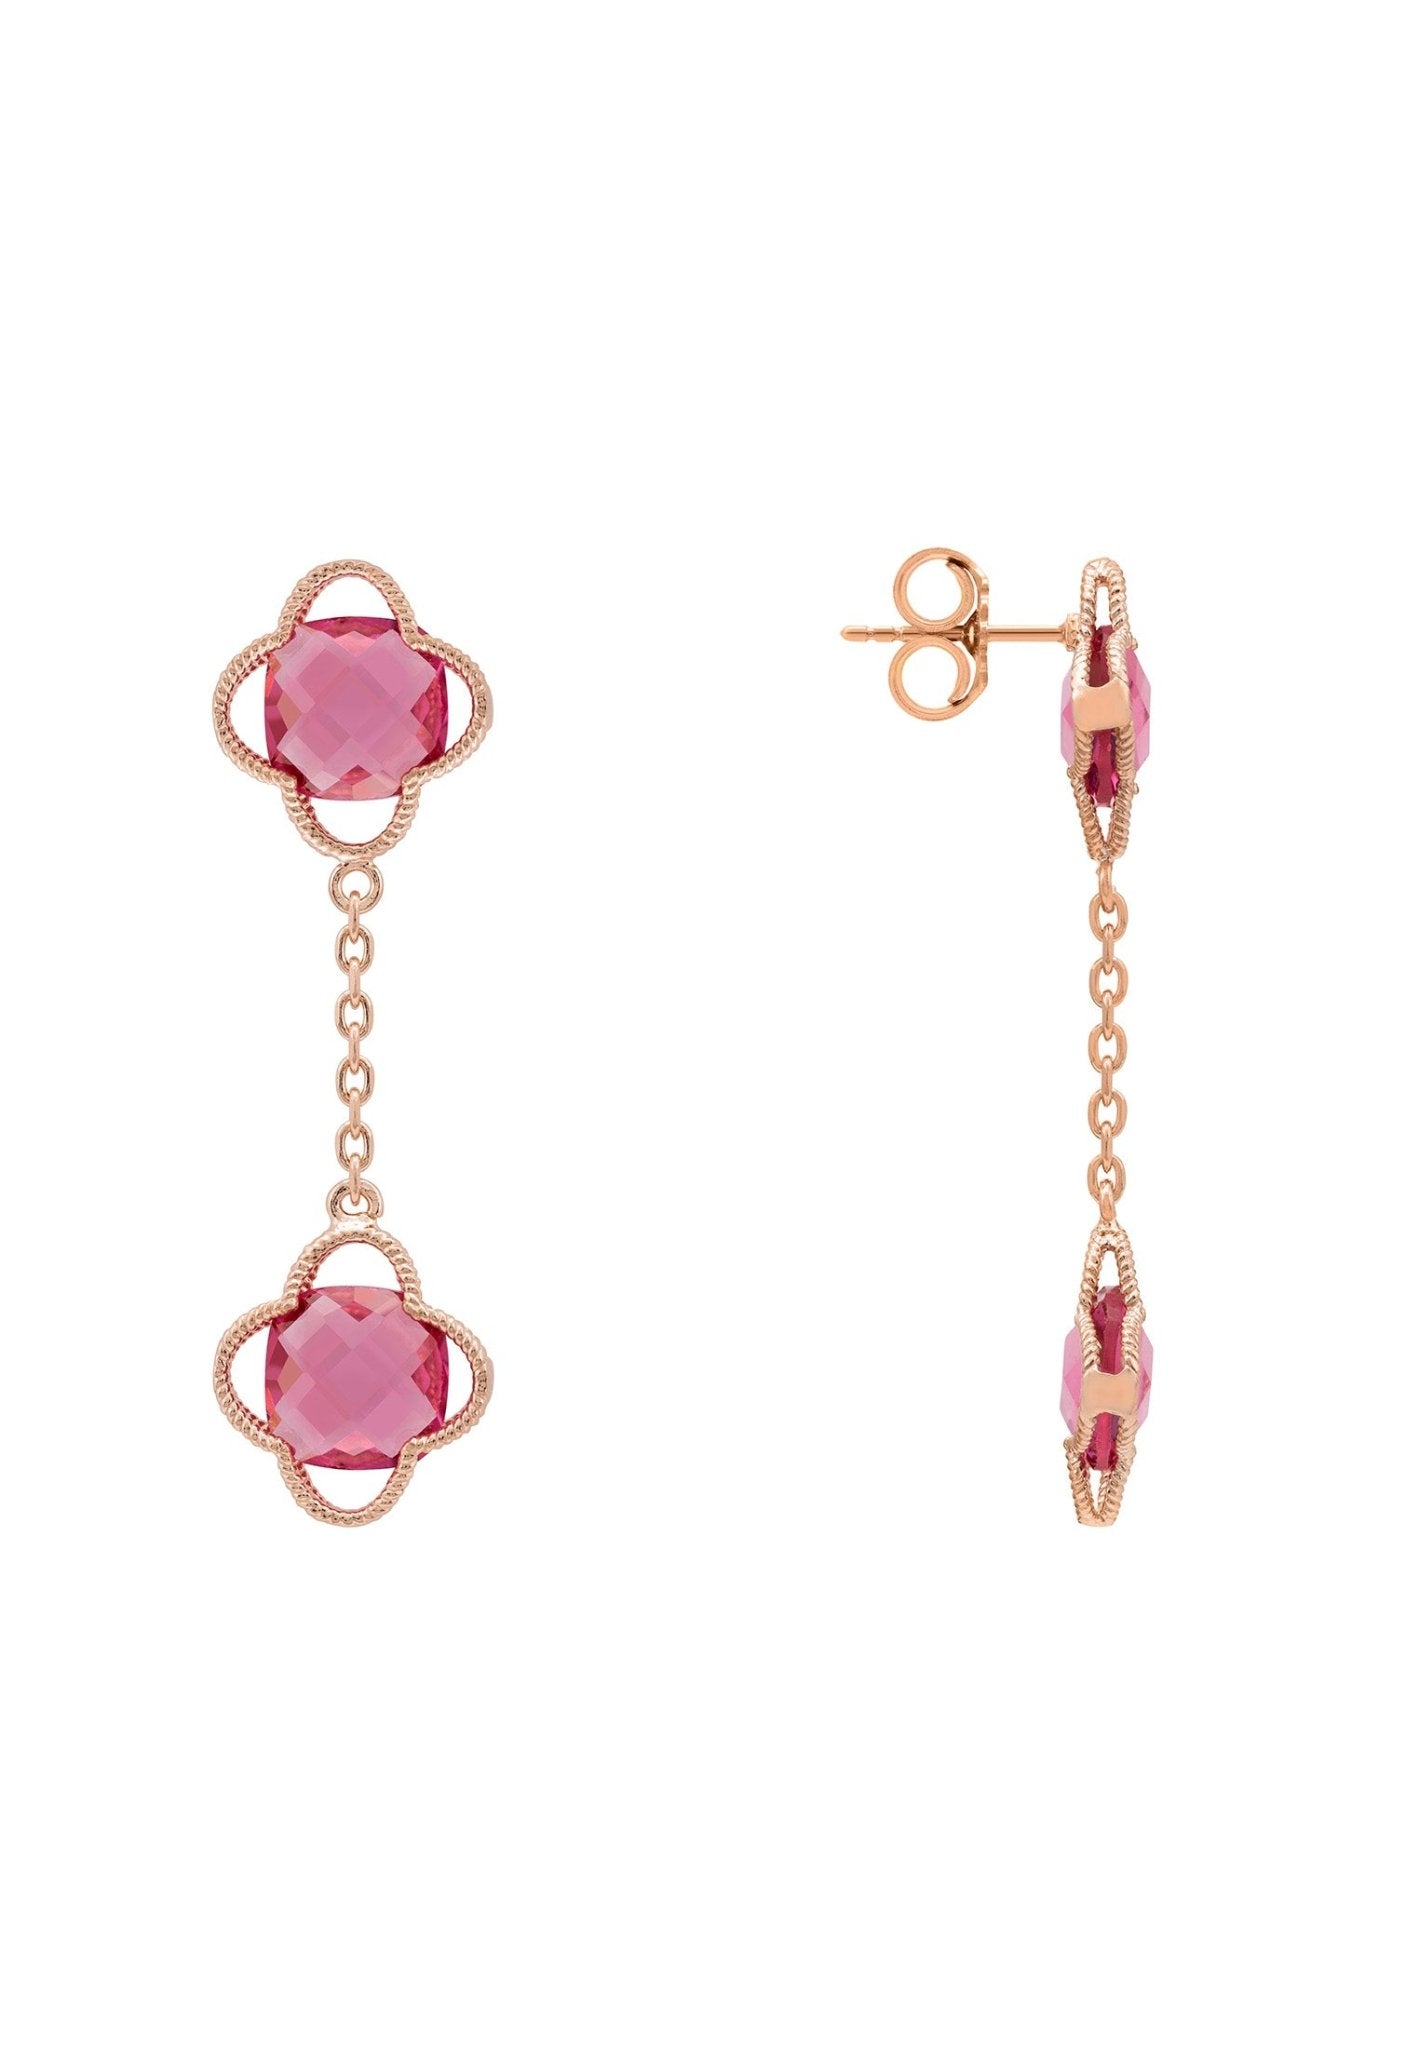 Open Clover Double Drop Earrings Rosegold Pink Tourmaline - LATELITA Earrings